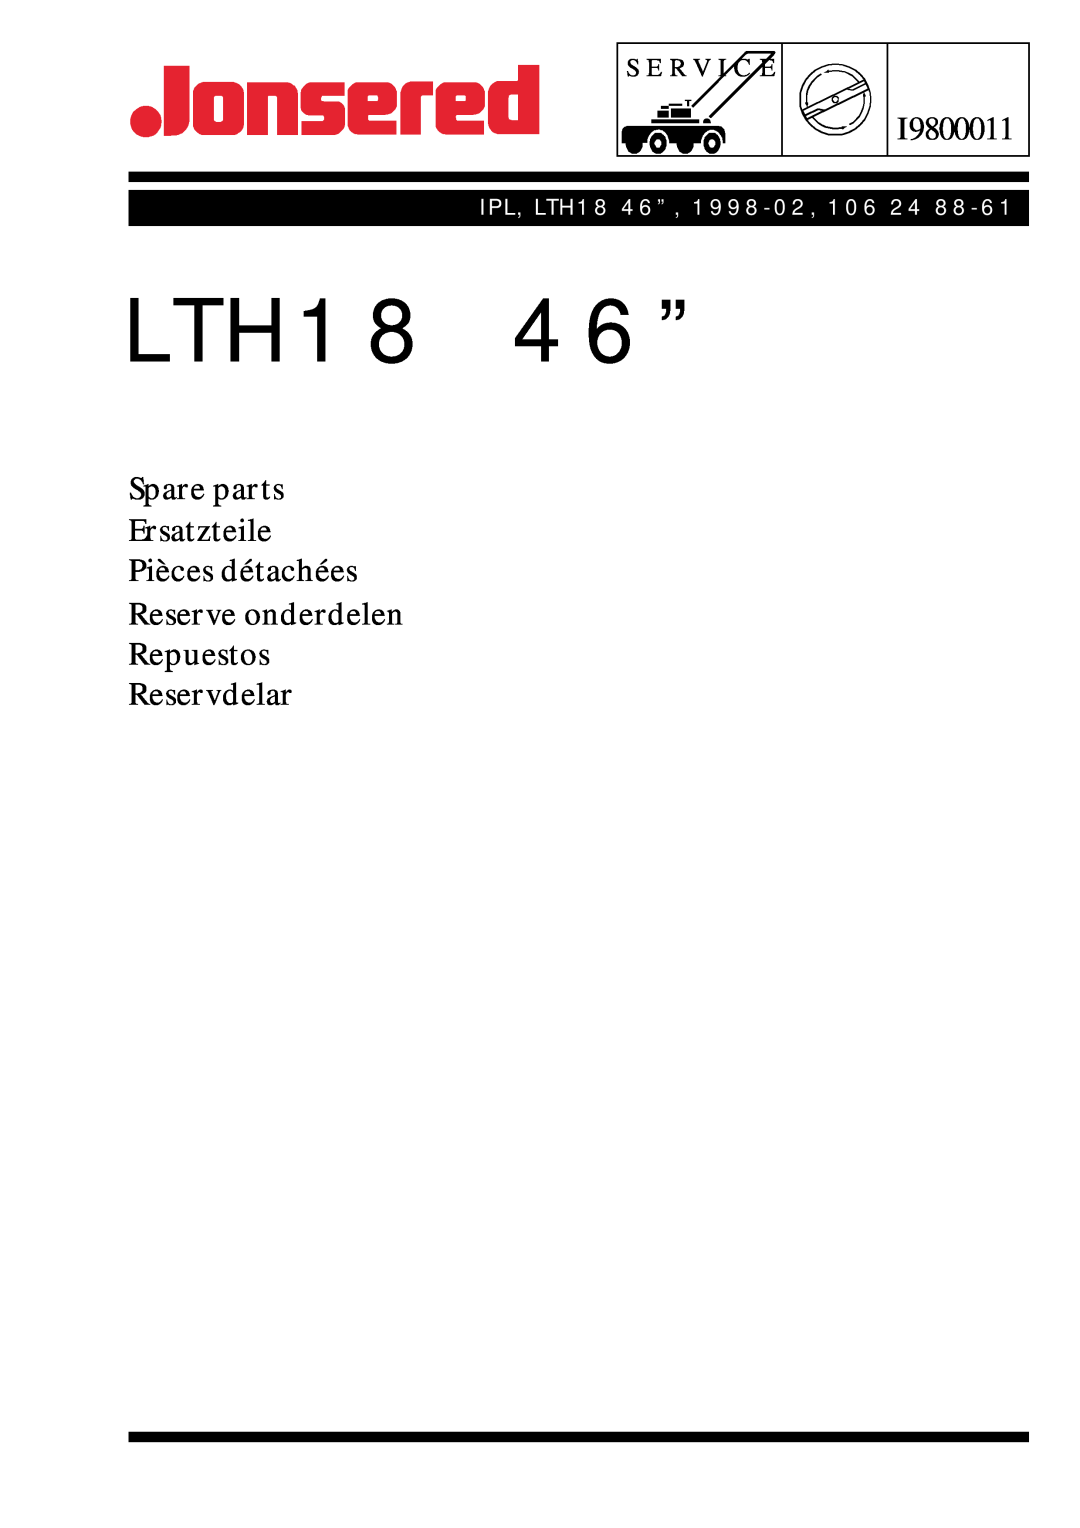 Jonsered manual LTH18 46”, I9800011, Spare parts Ersatzteile Pièces détachées Reserve onderdelen Repuestos, Reservdelar 